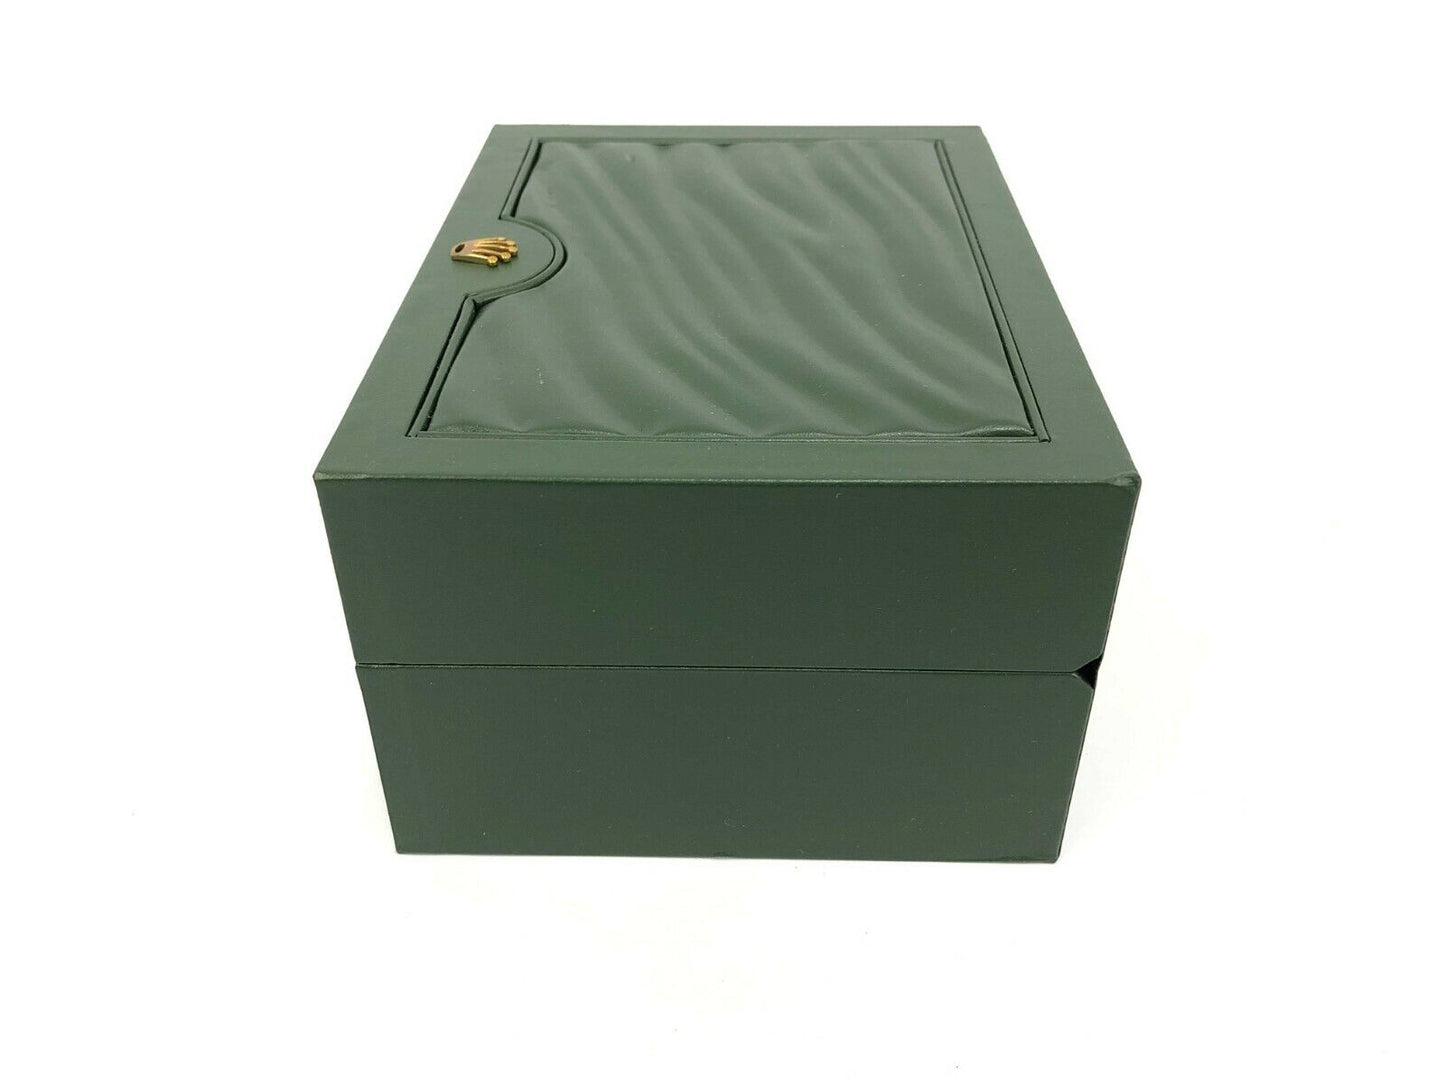 VINTAGE GENUINE ROLEX WATCH box case no inner cushion 30.00.08 green 0427012e